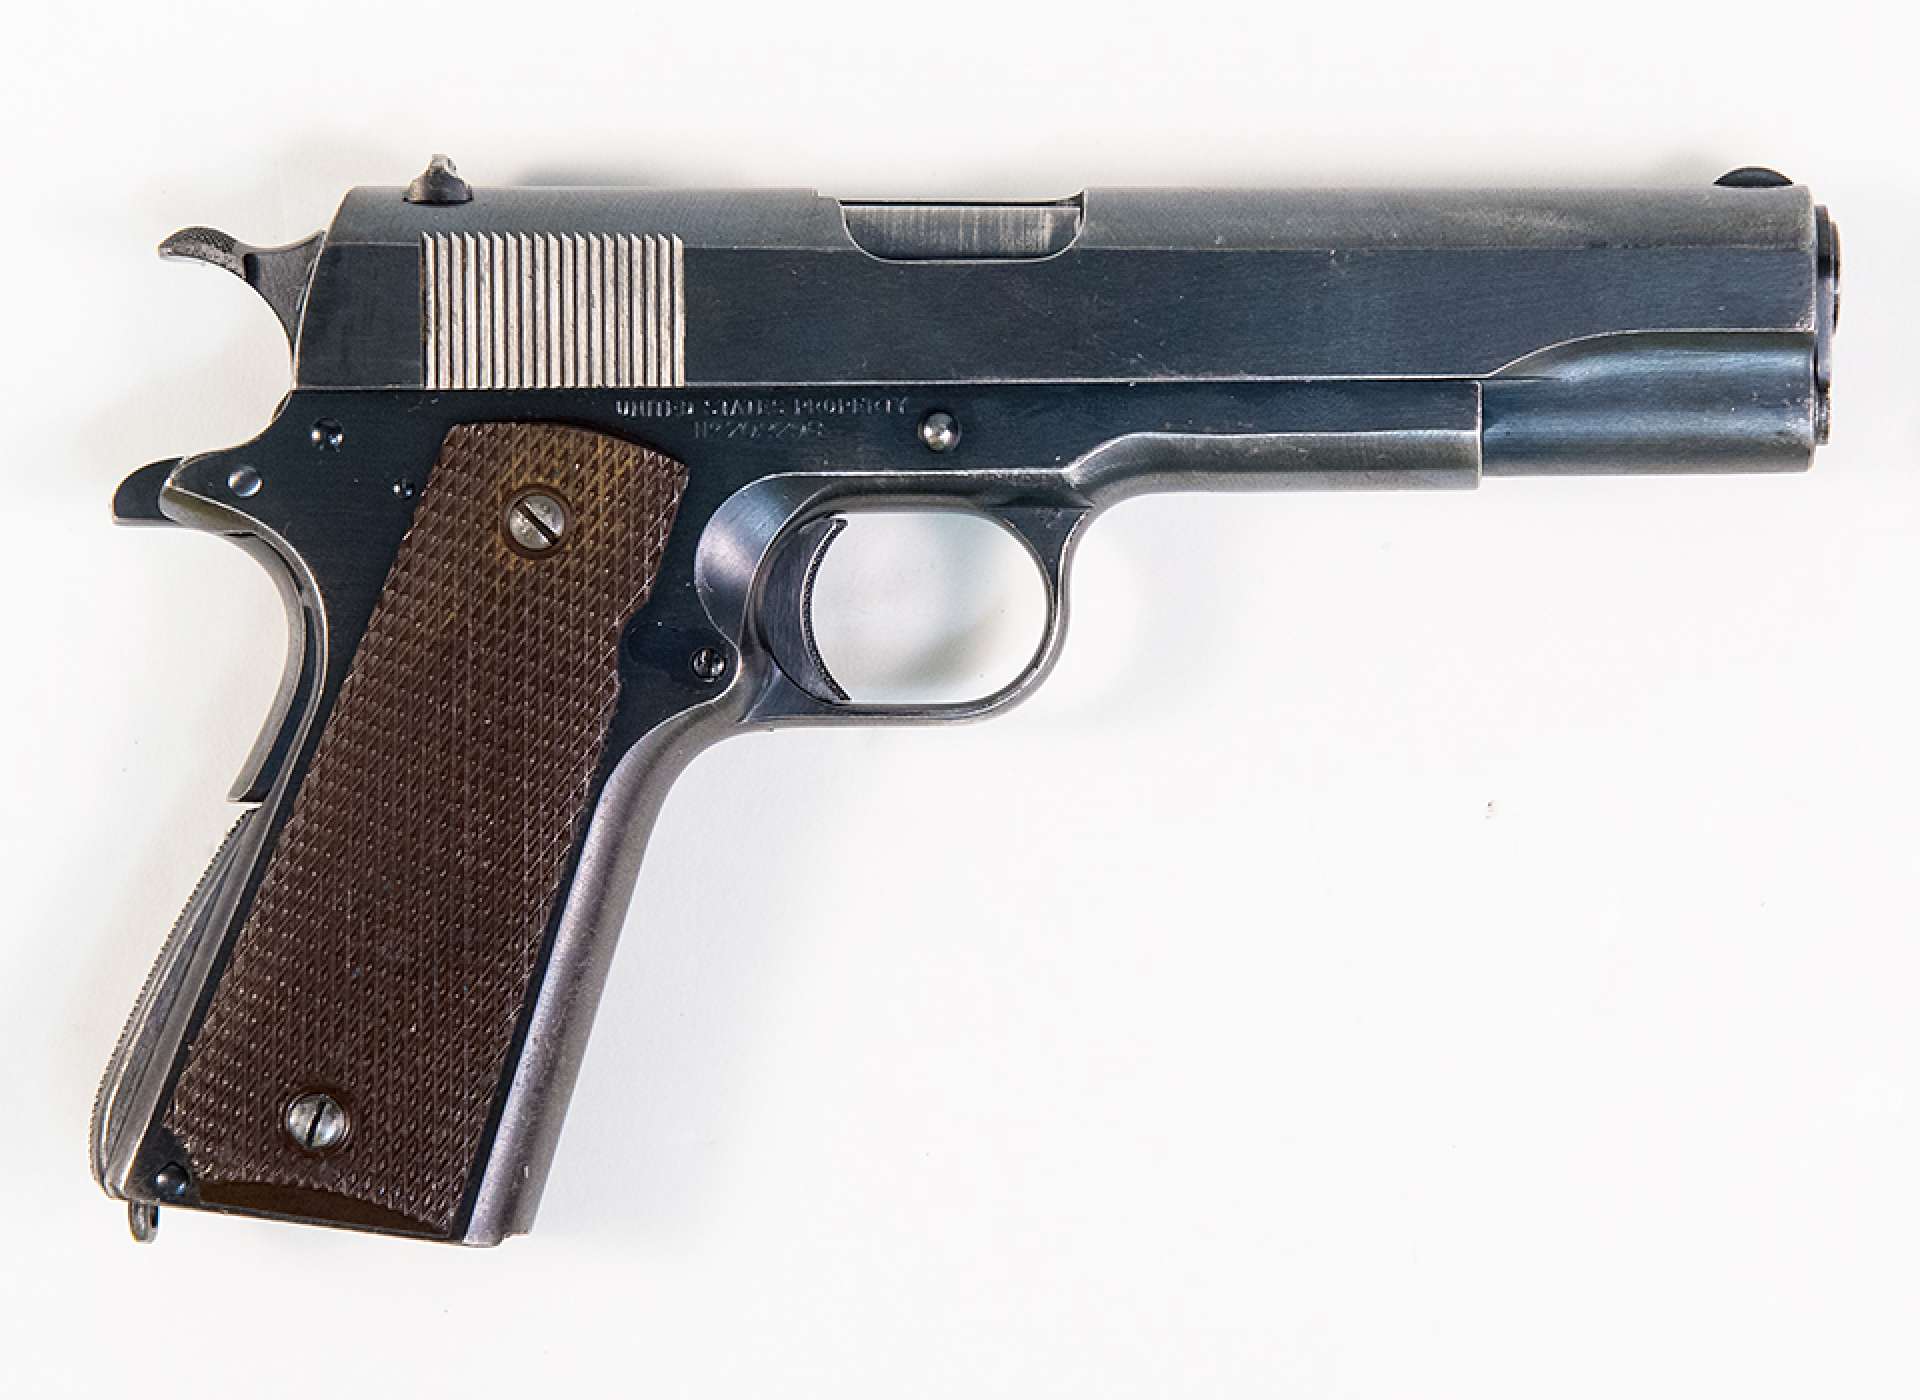 M1911A1 pistol